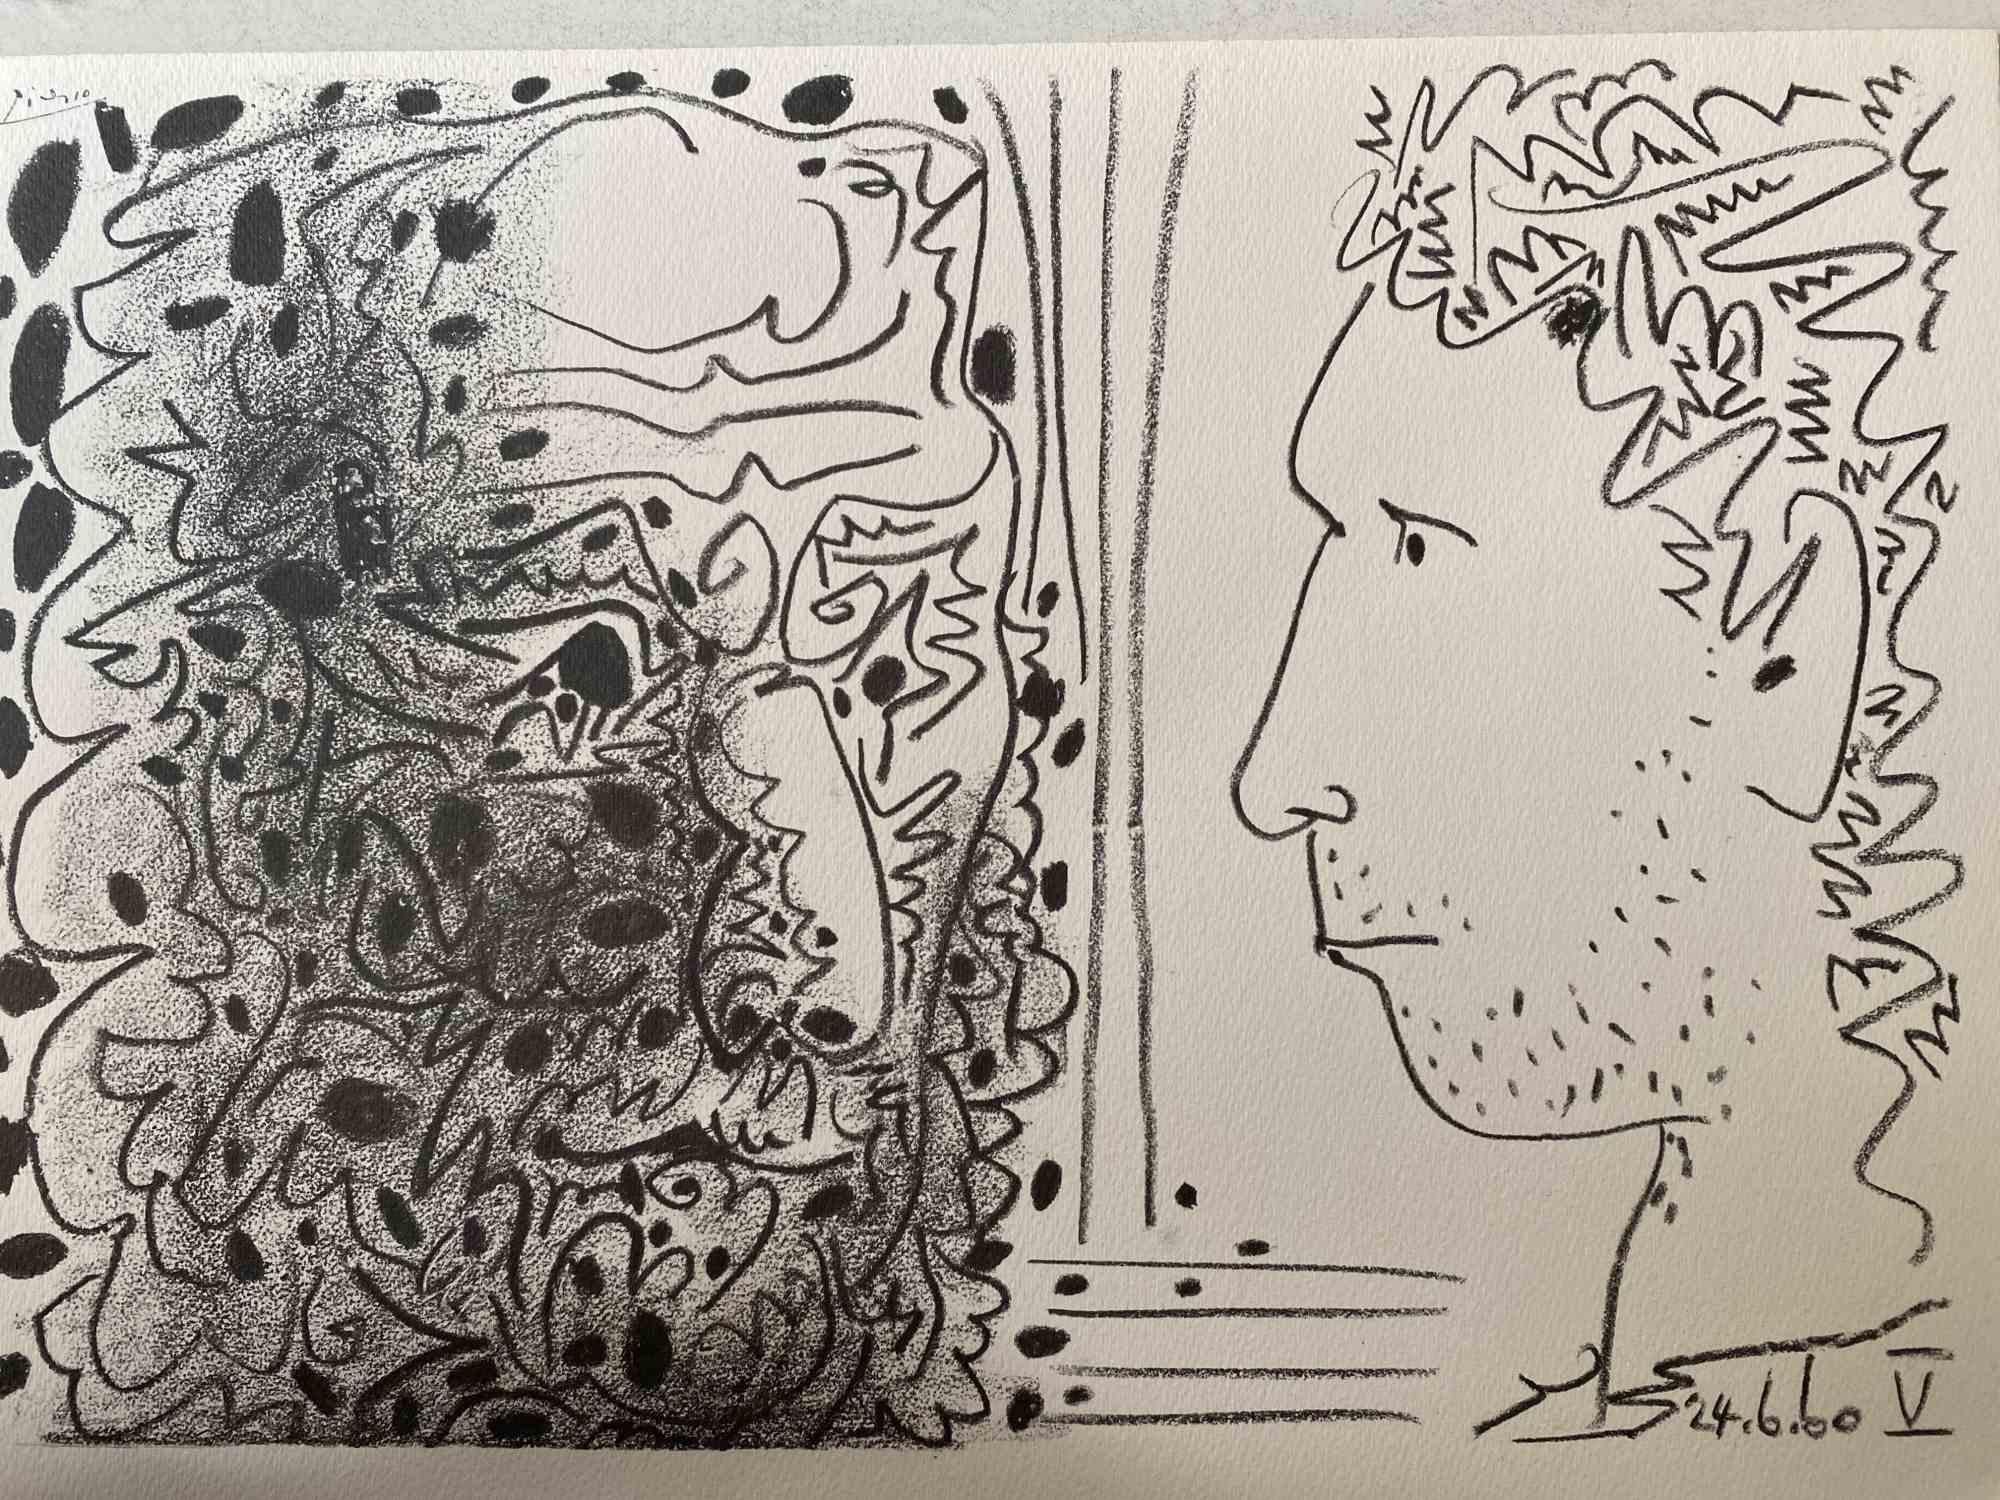 Deux têtes - Photolithograph after Pablo Picasso - 1960s